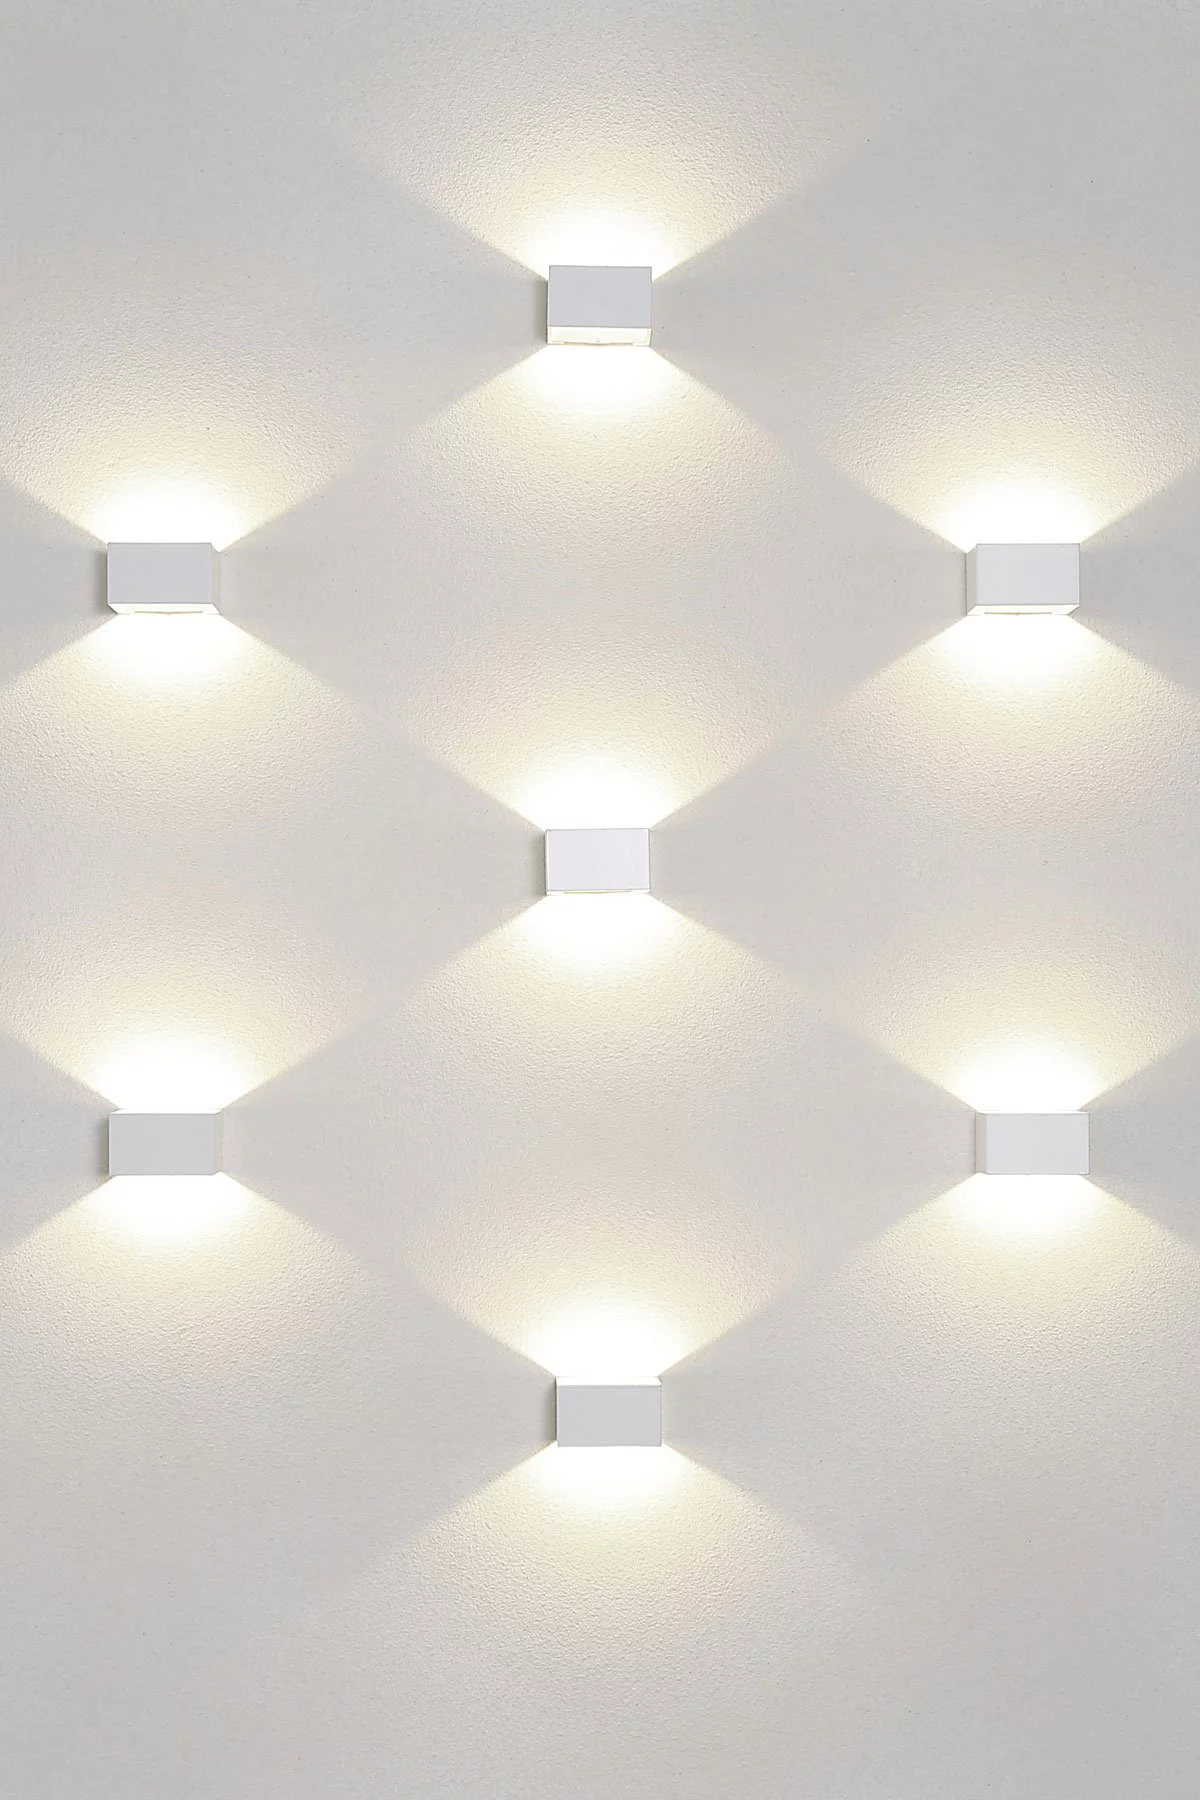   
                        
                        Декоративная подсветка NOWODVORSKI (Польша) 84935    
                         в стиле Модерн.  
                        Тип источника света: встроенный led-модуль, несъемный.                                                                                                  фото 2